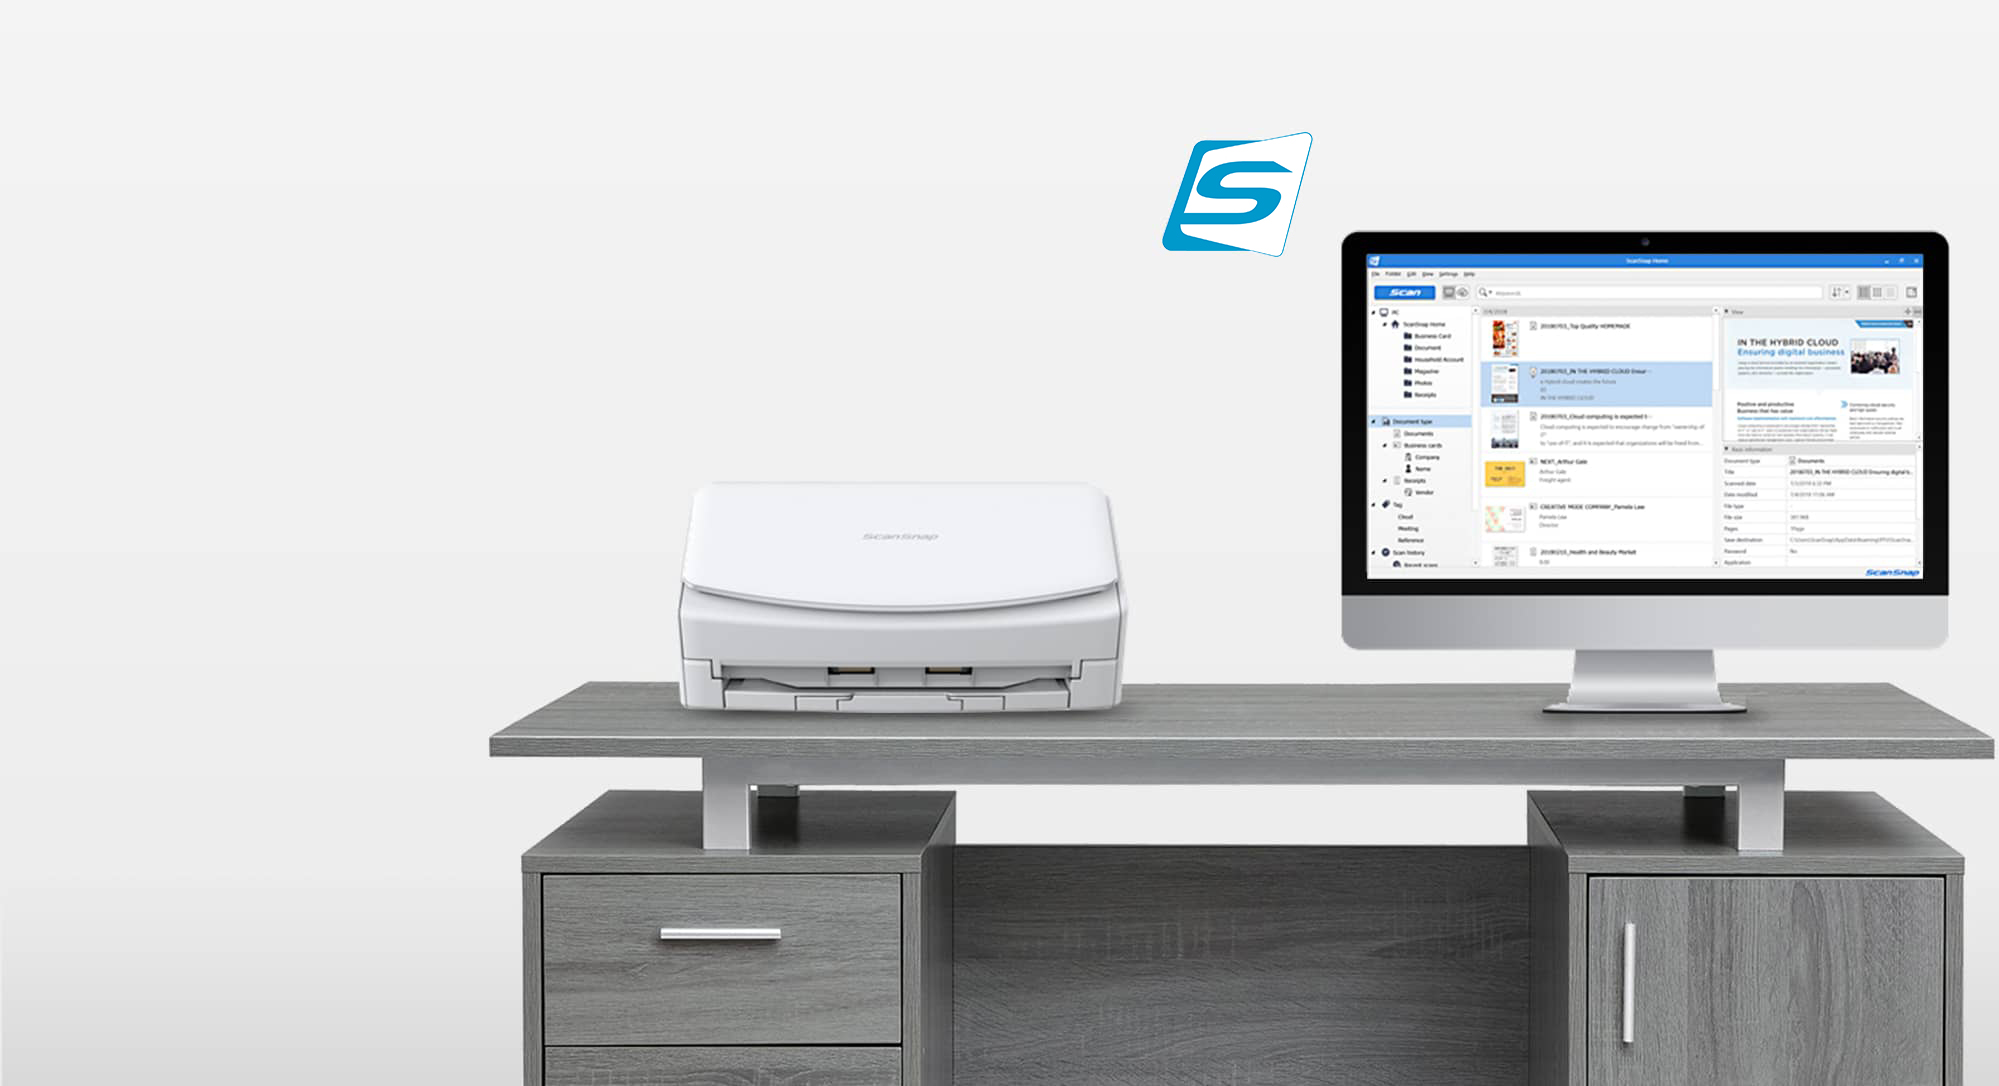 Weißer ScanSnap-Scanner auf einem Schreibtisch neben einem Computerbildschirm